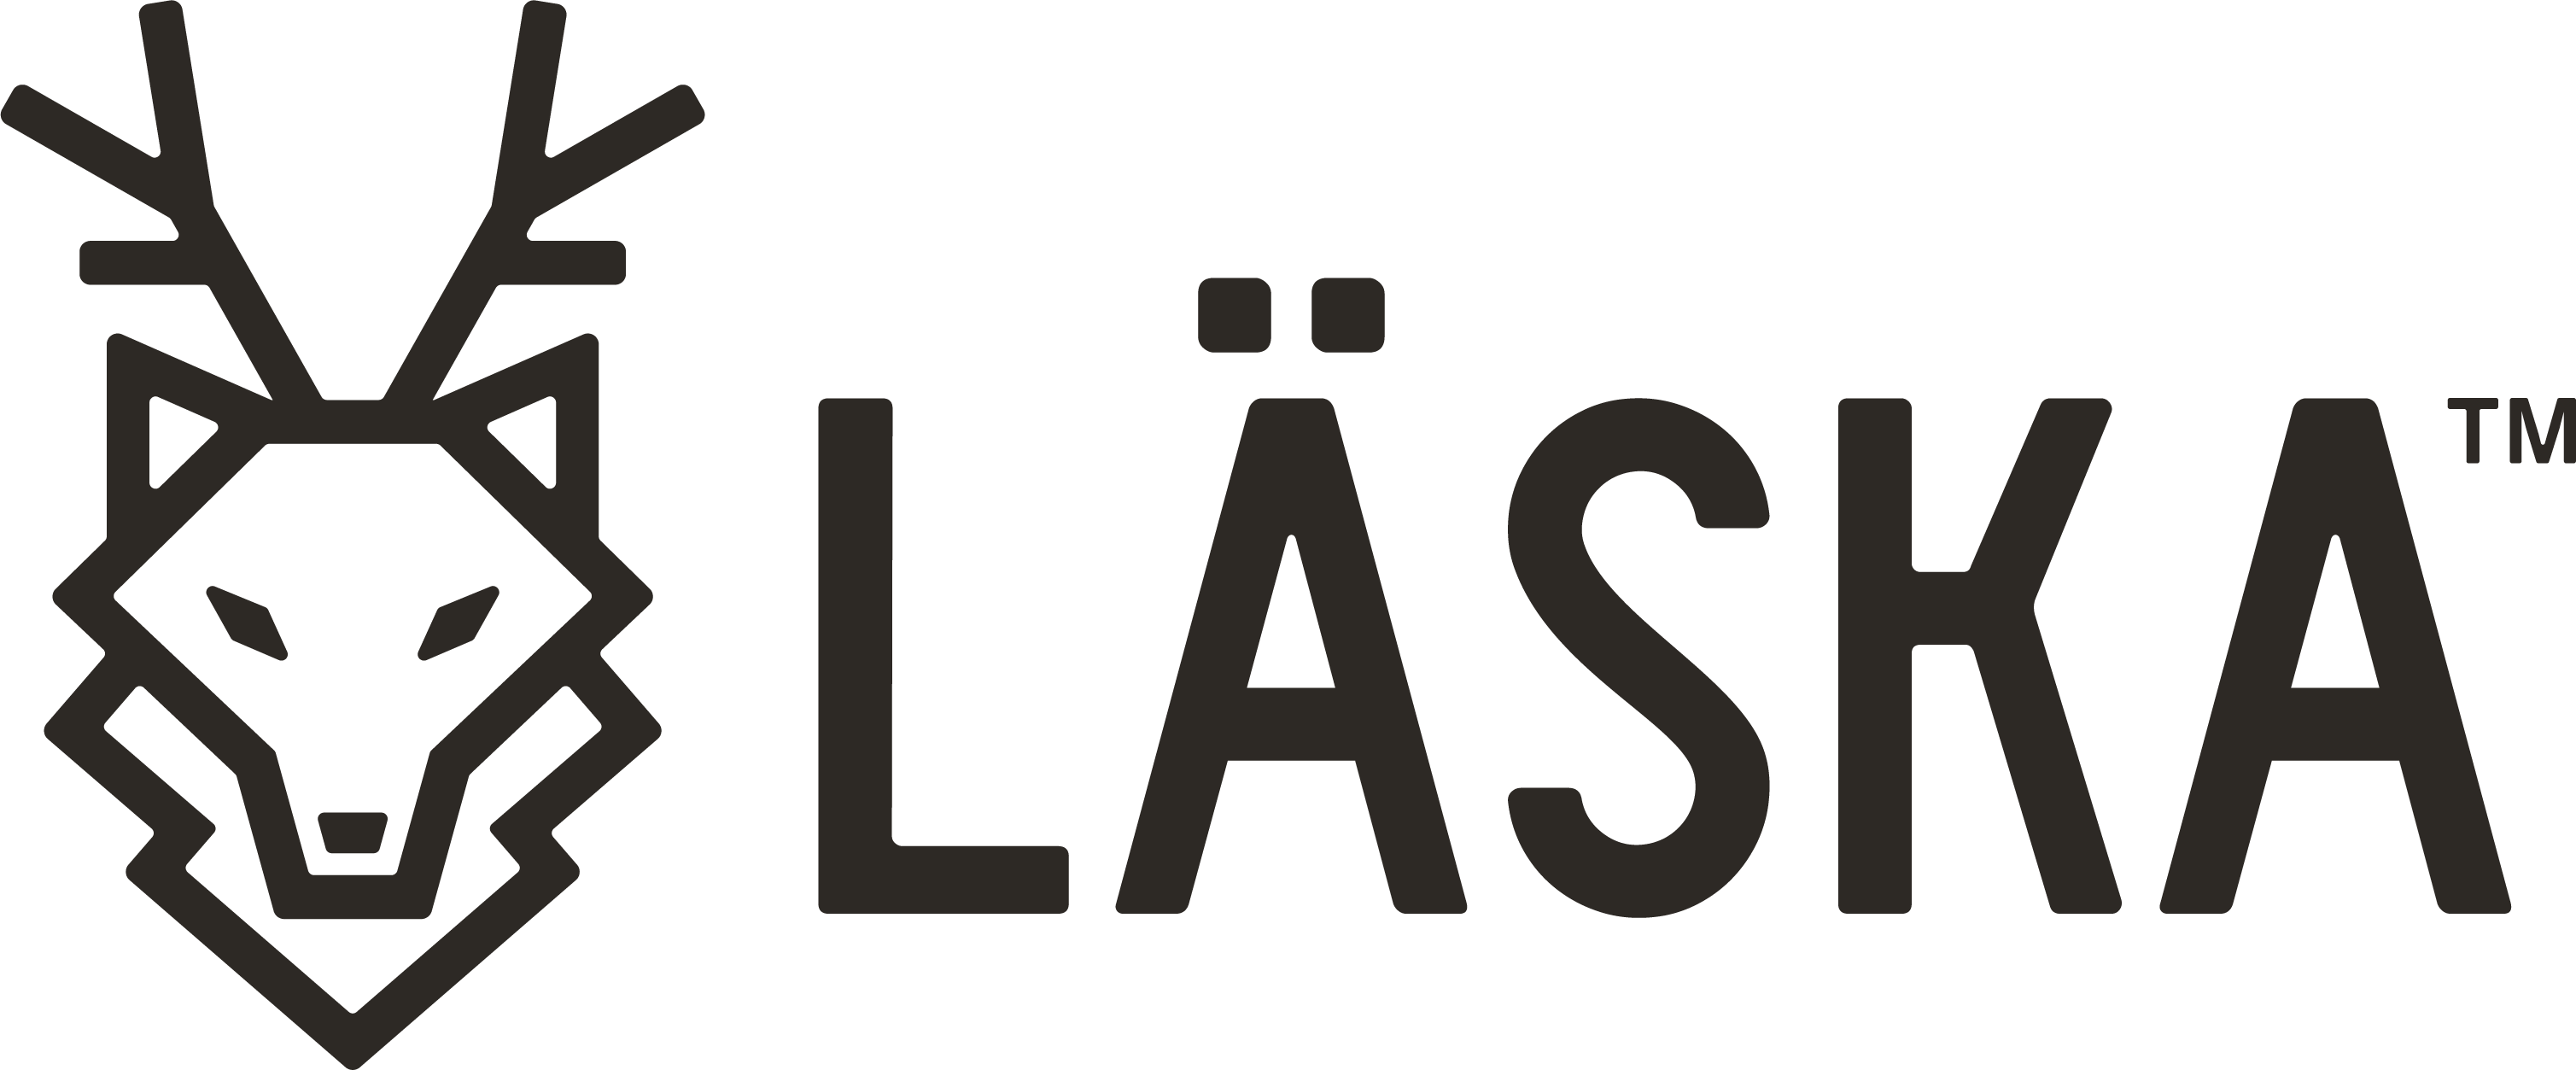 Laska logo h pms tm black